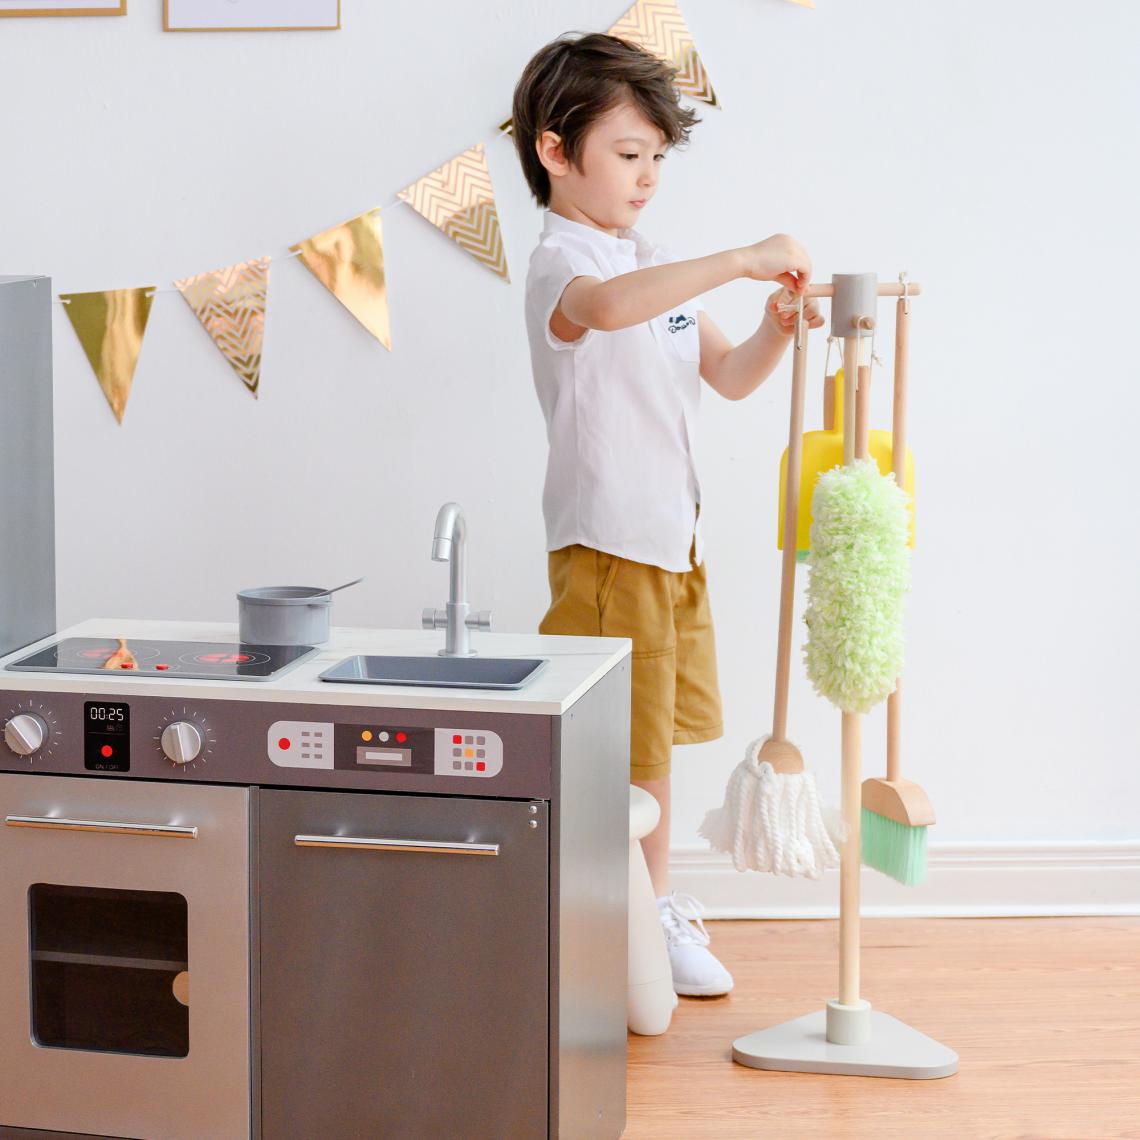 Teamson Kids - Jeu de nettoyage enfant ménage 6 accessoires balai serpillière Teamson Kids TK-W00005 - Cuisine et ménage